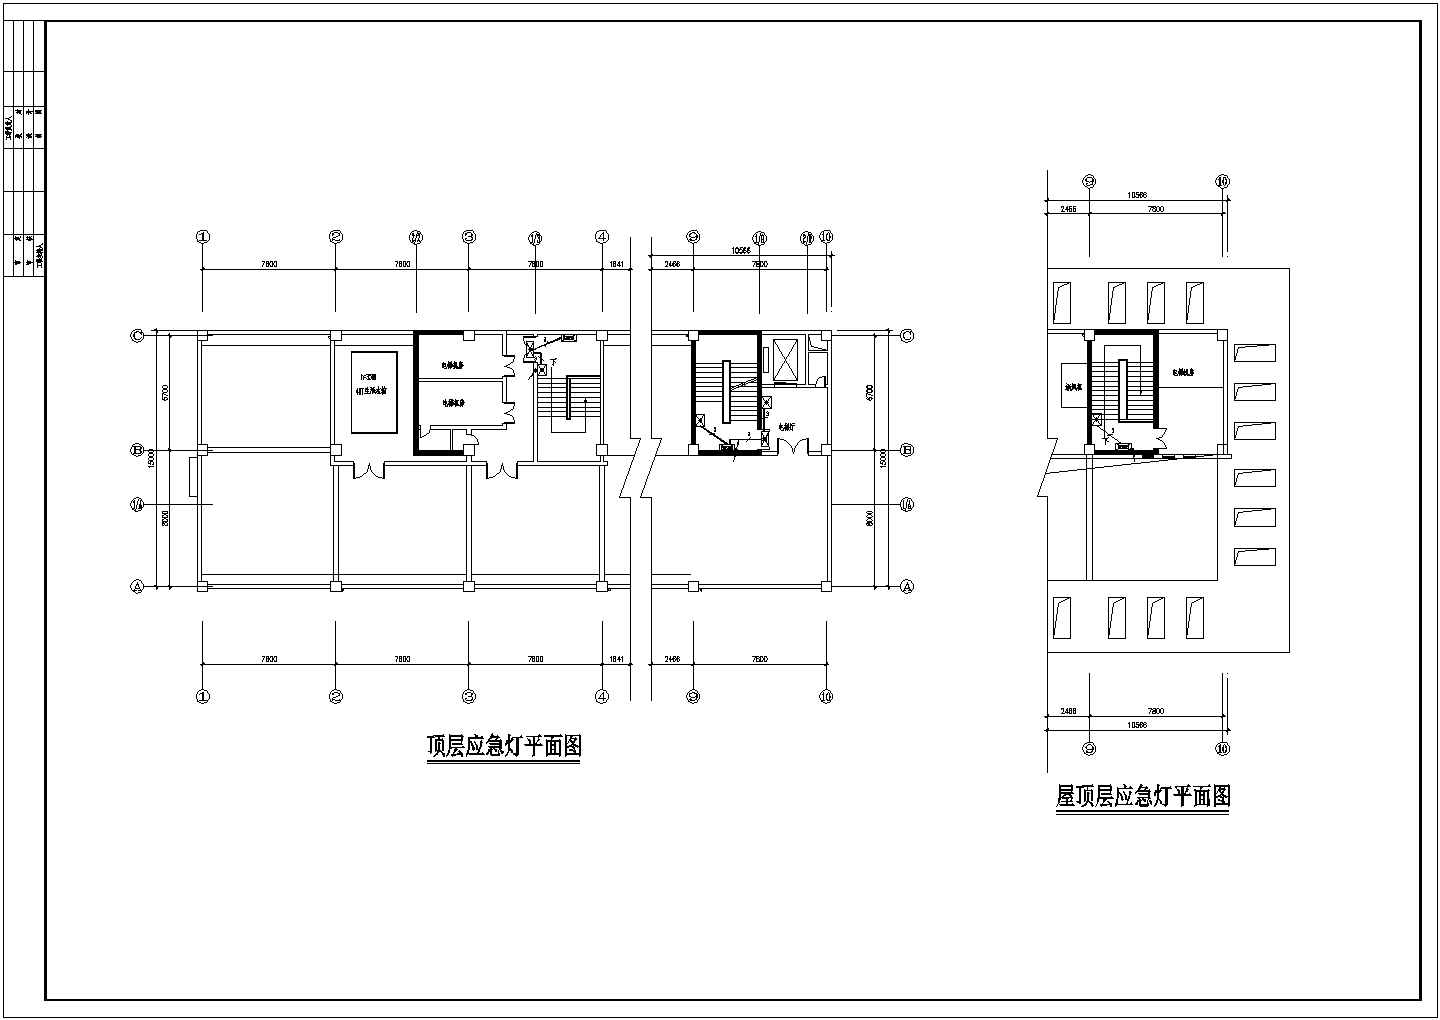 全套医院综合楼建筑电气工程设计图纸-39